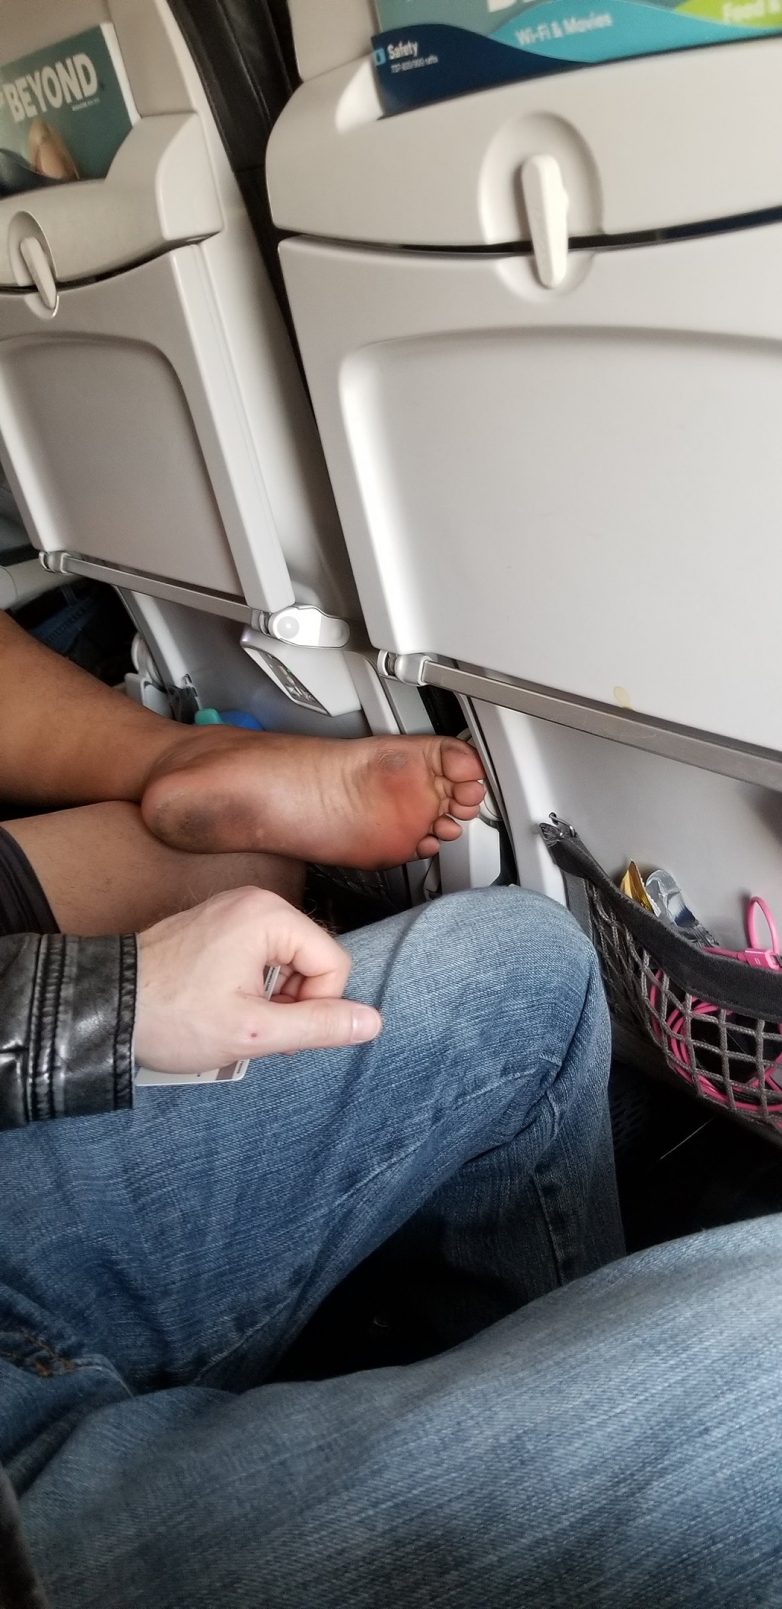 13 отвратительных пассажиров самолётов, которых хочется ударить даже сквозь дисплей